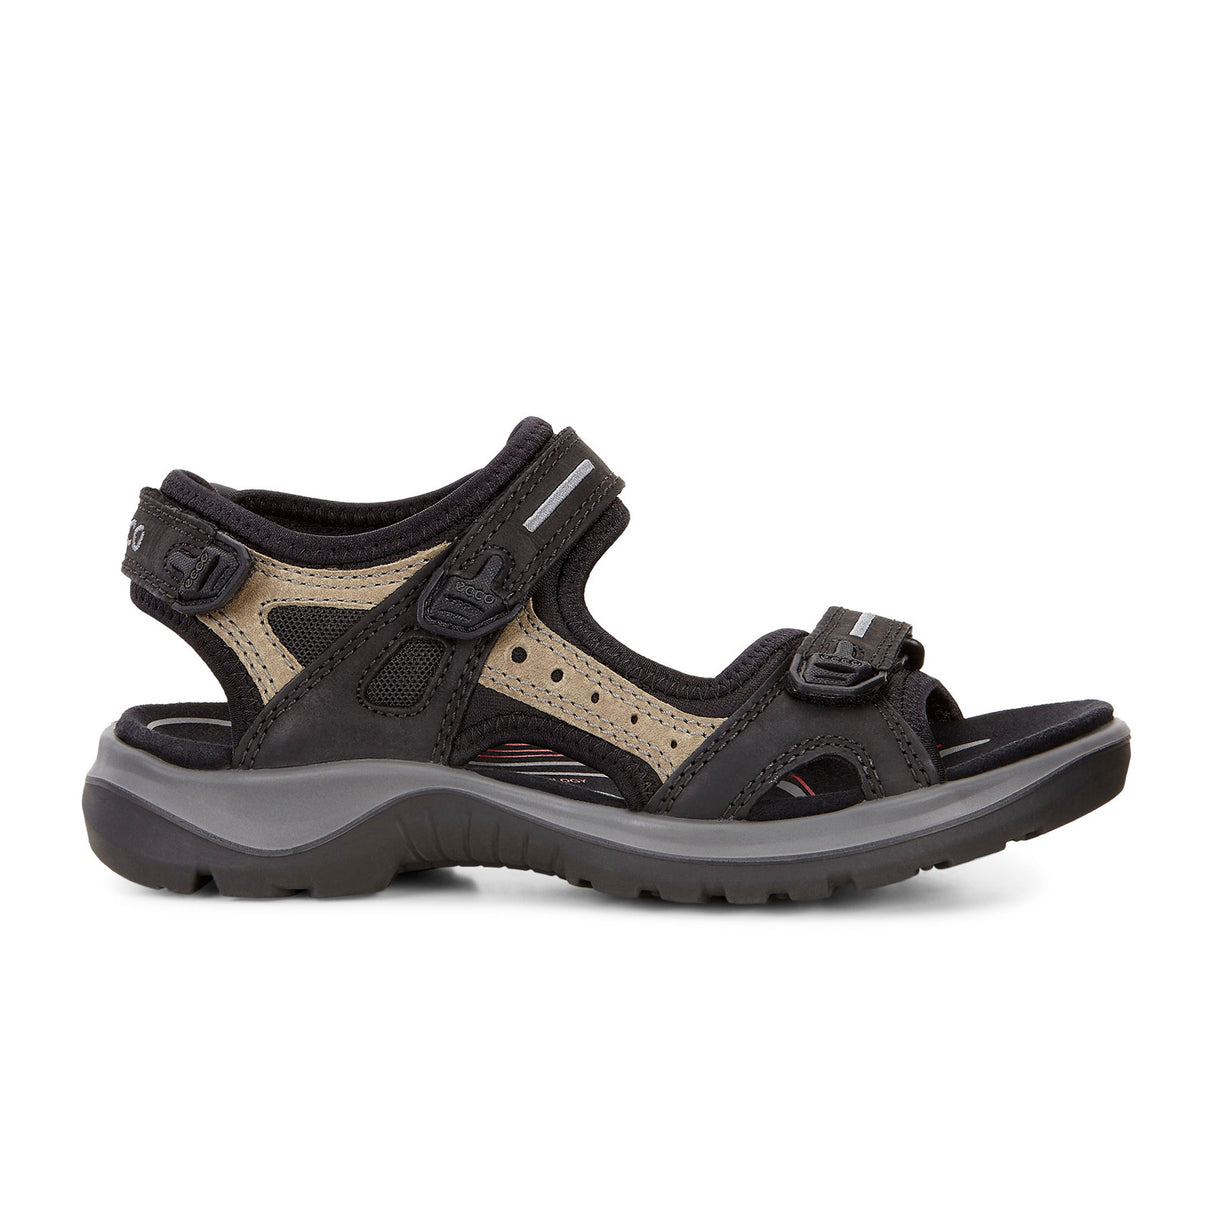 ECCO Yucatan Active Sandal (Women) - Black/Mole/Black Sandals - Active - The Heel Shoe Fitters